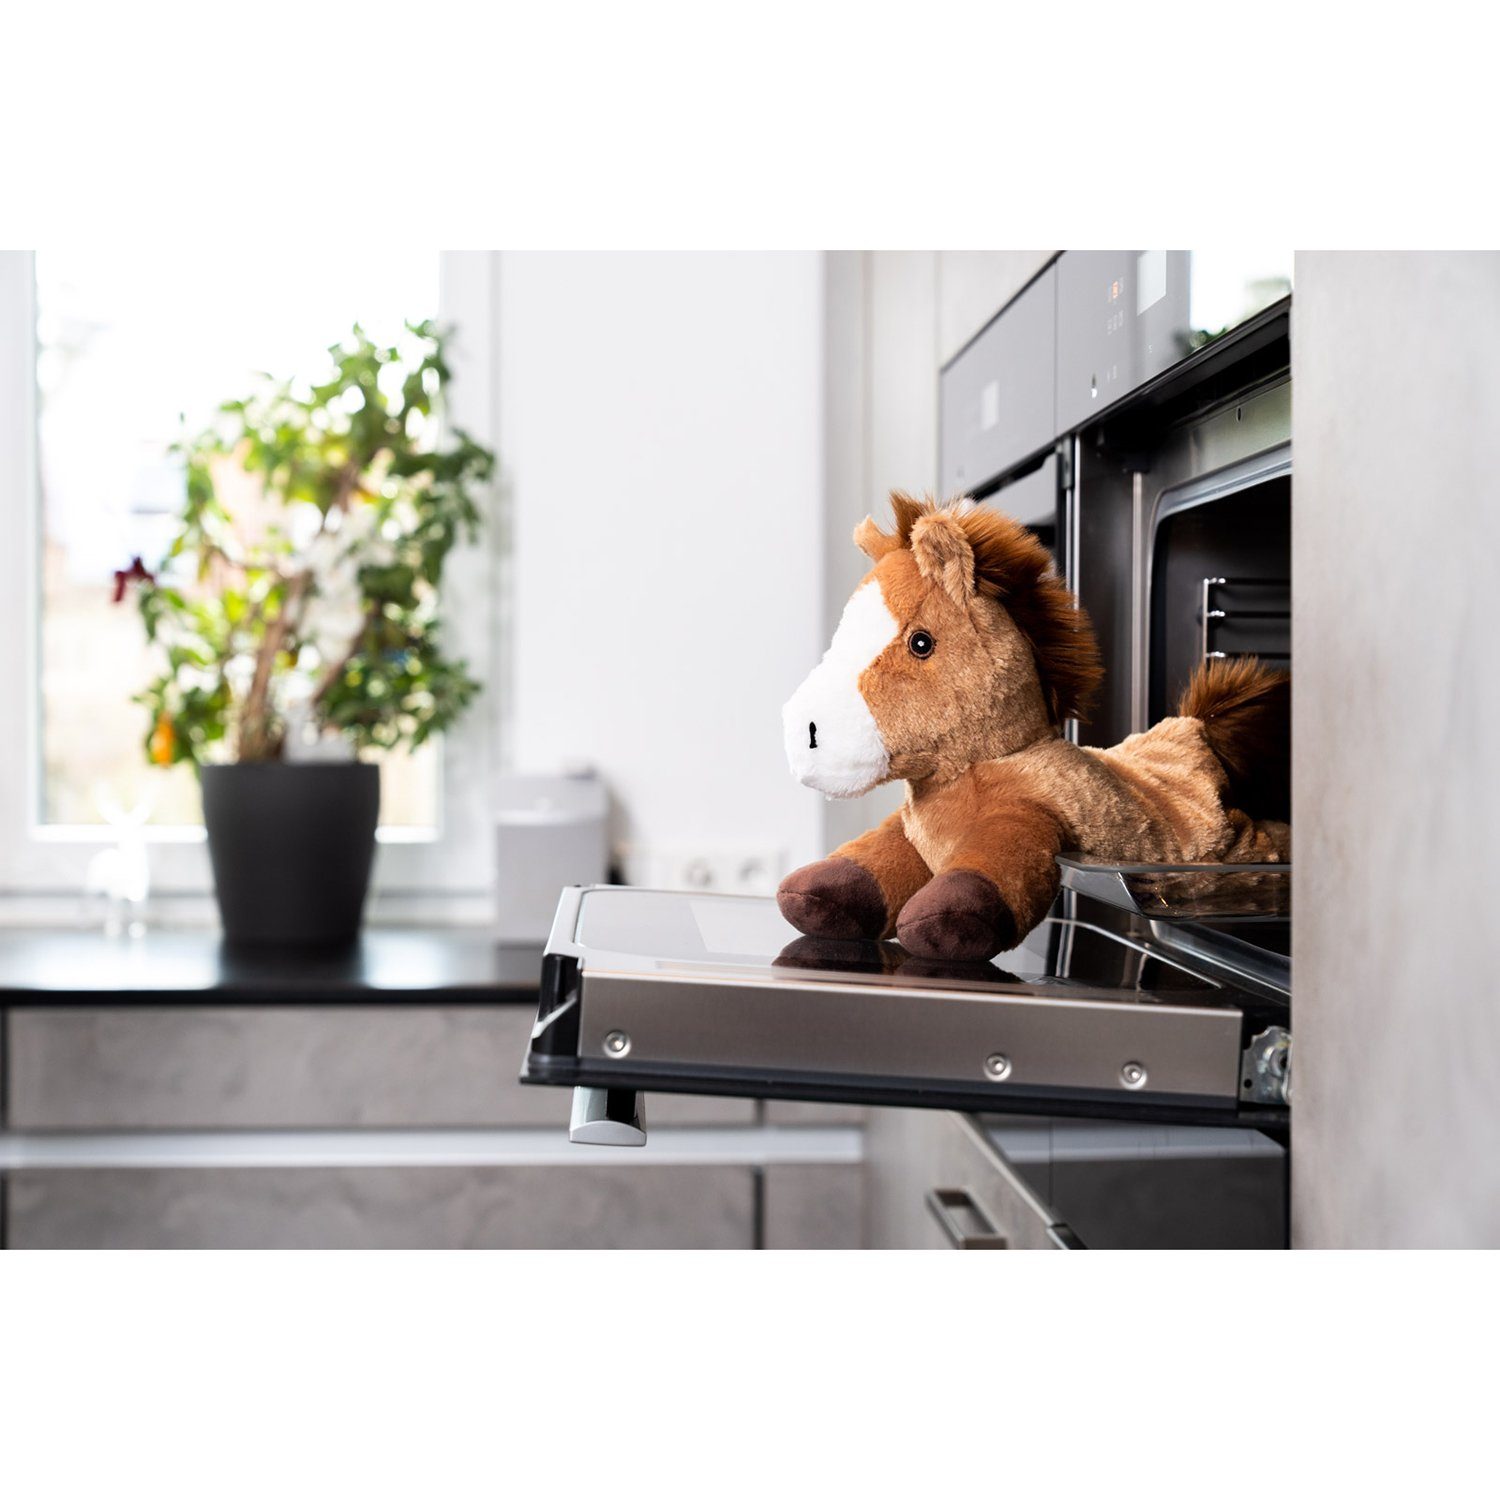 Wärmetier Habibi Plush Pony (Wärmekuscheltier) Mikrowelle/Ofen, braun Wärmekissen Habibi